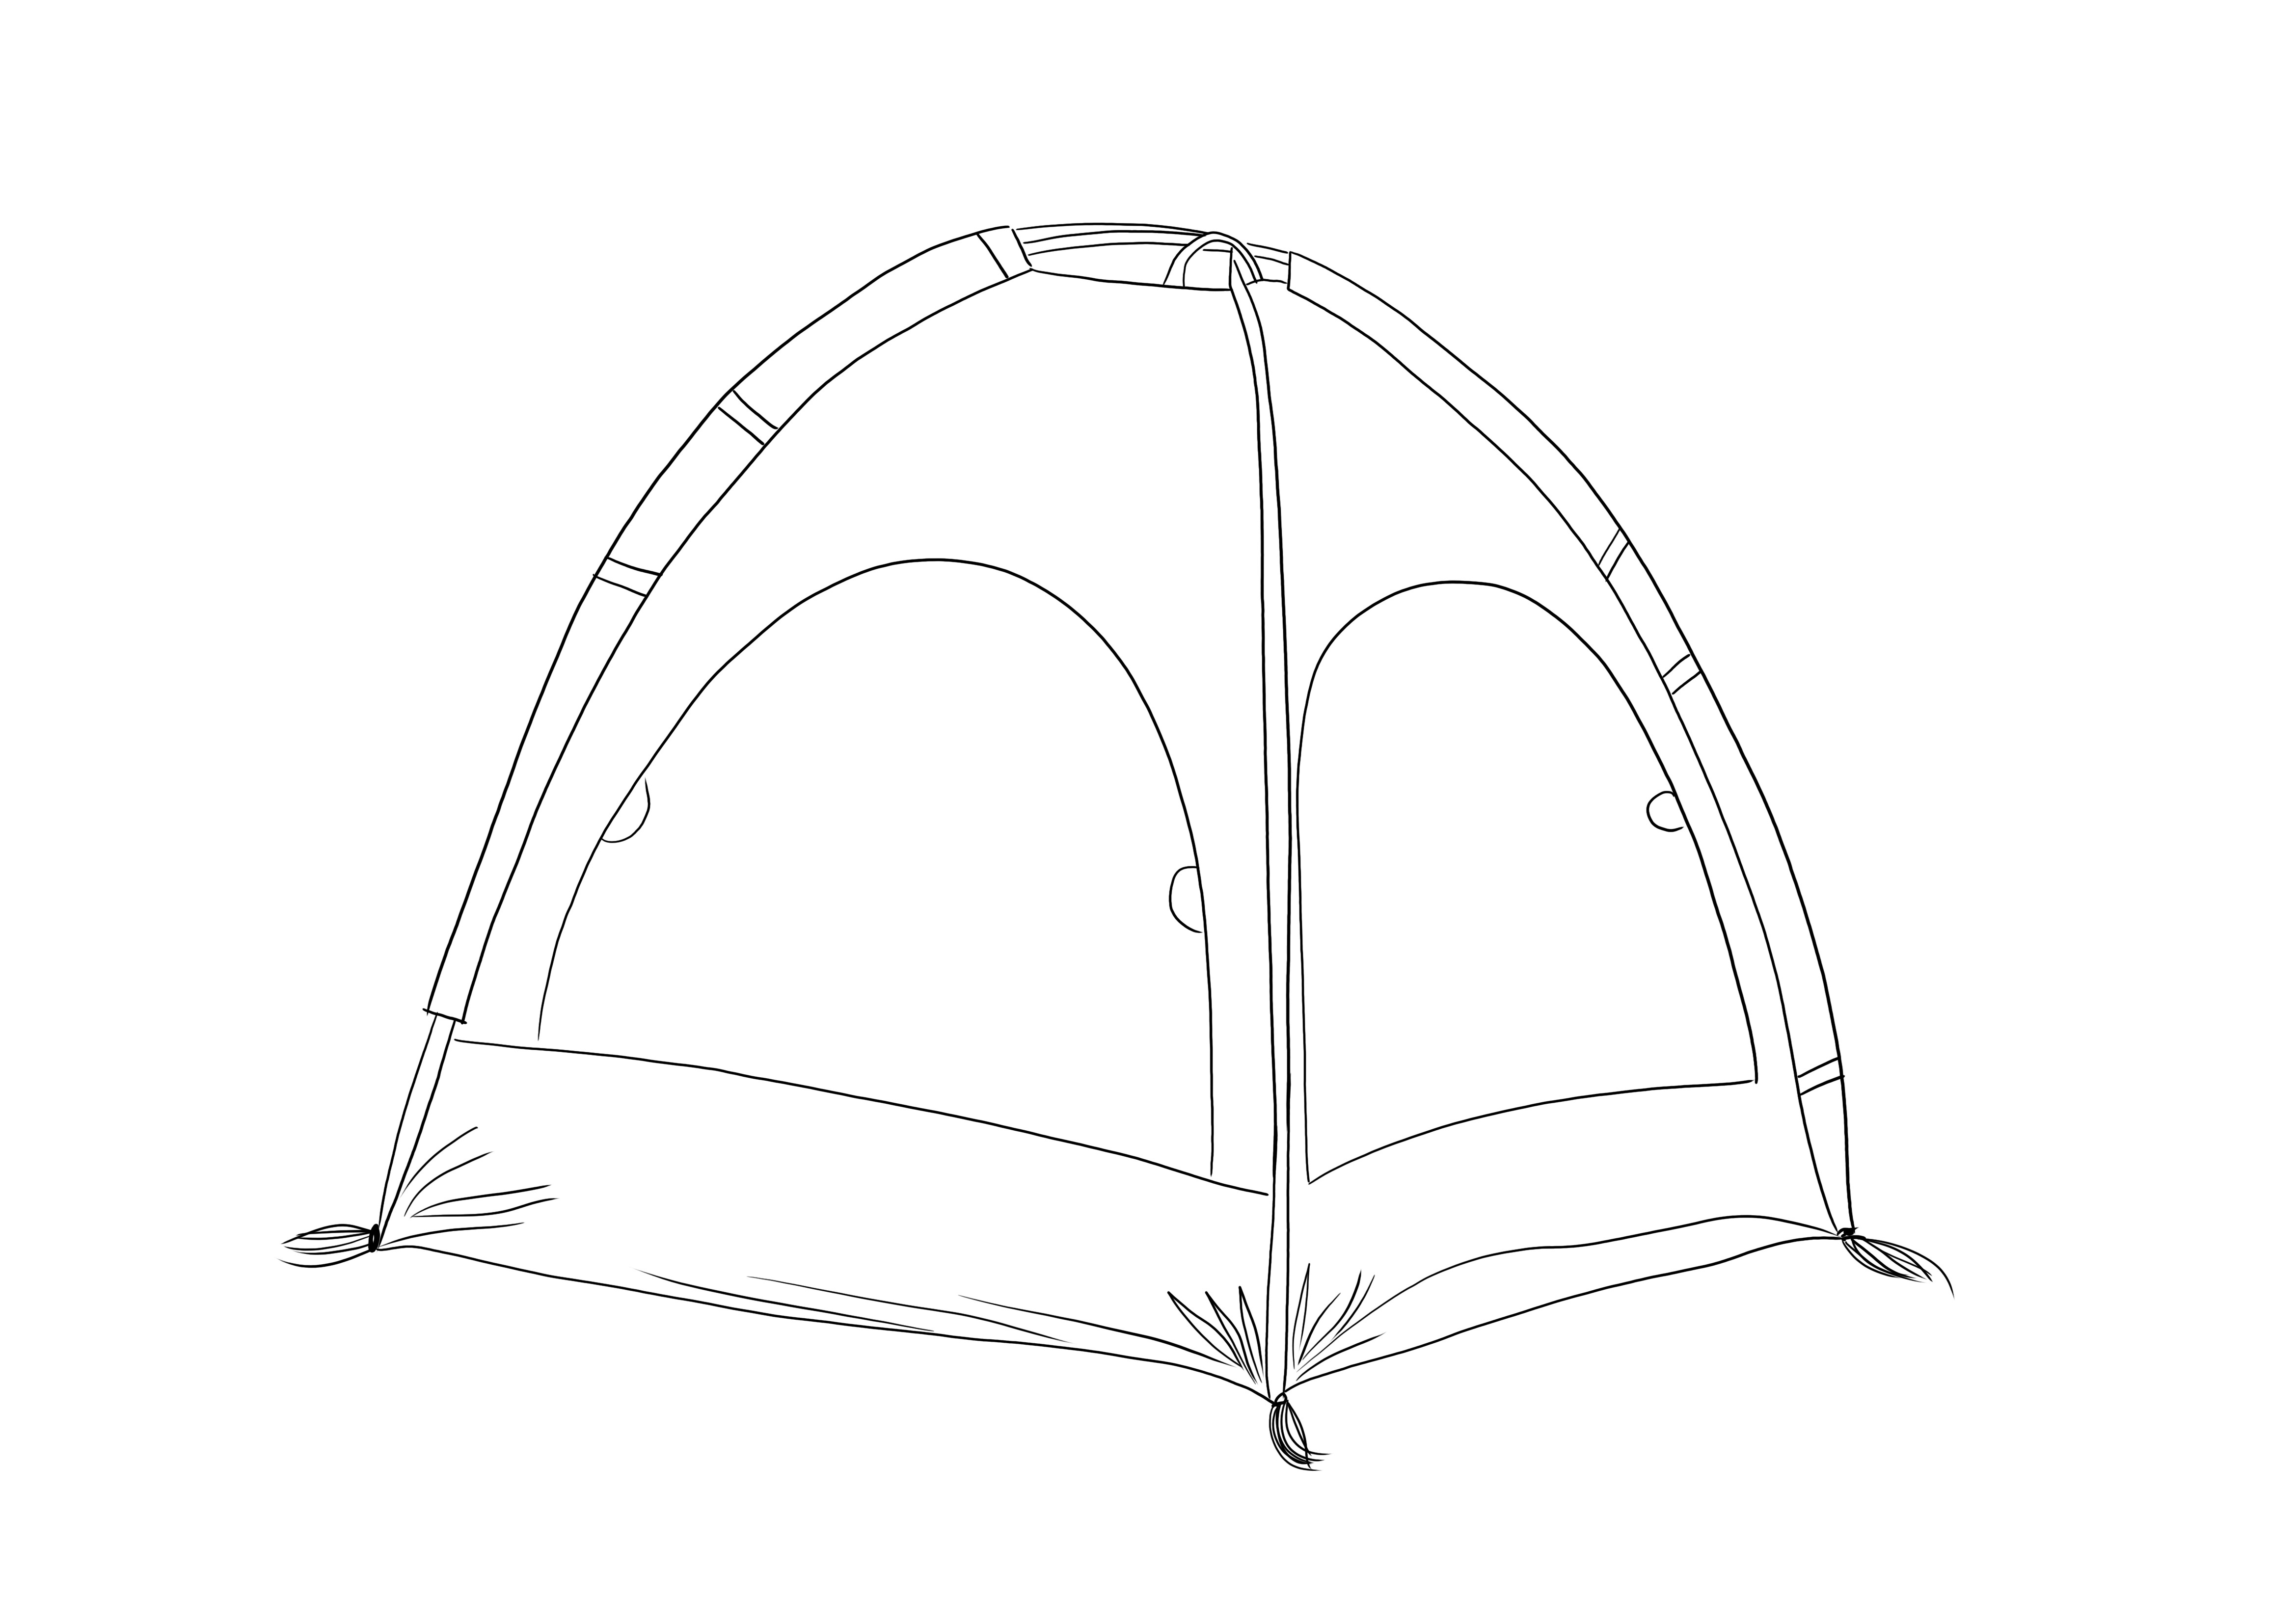 Camping Tent free printable untuk dicetak atau disimpan untuk gambar nanti